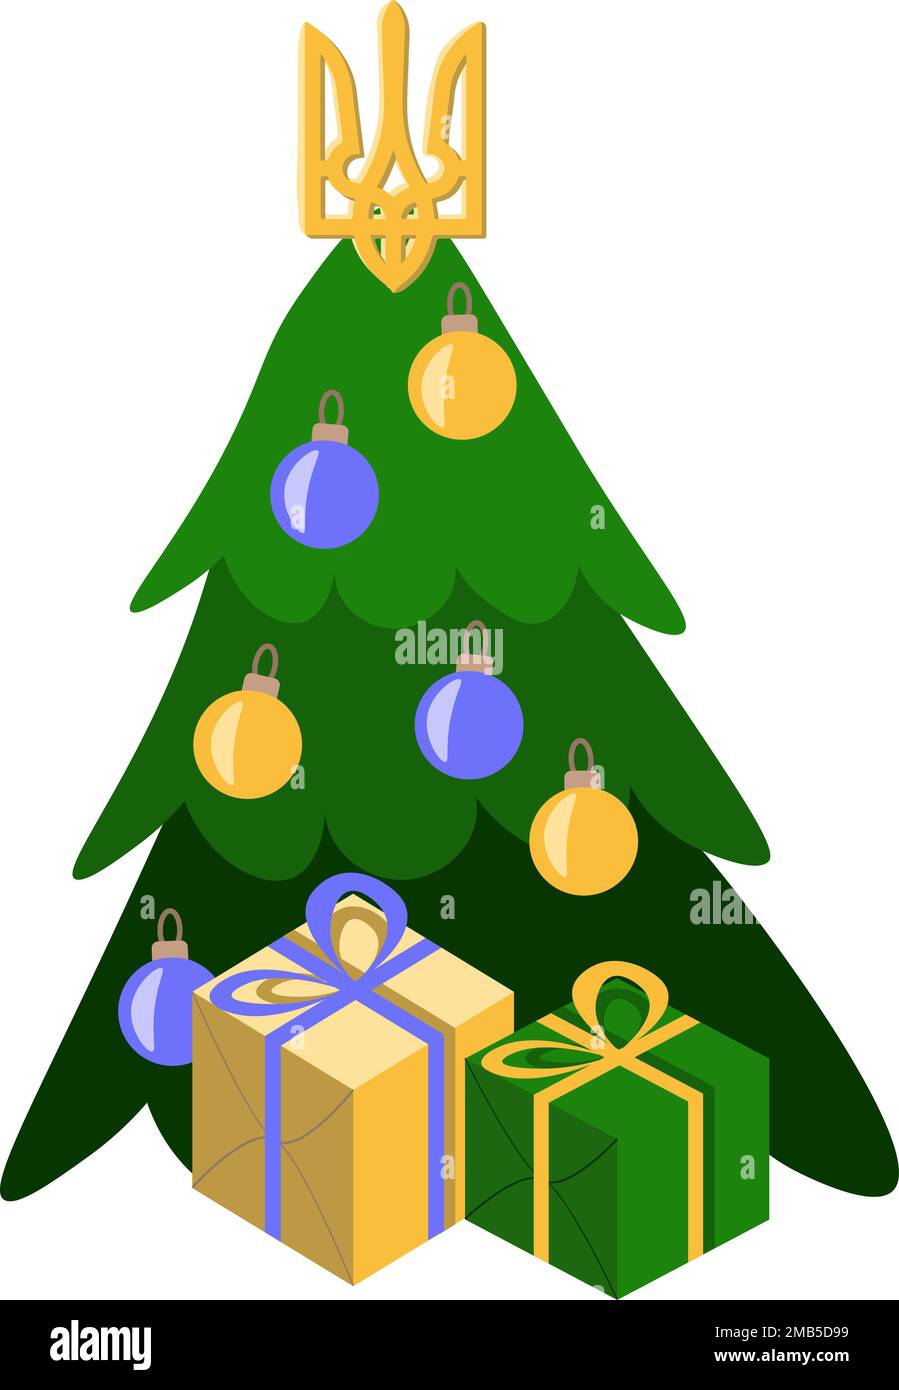 Composizioni di festa con regali di Natale e albero di Natale colori bandiera Ucraina Illustrazione Vettoriale